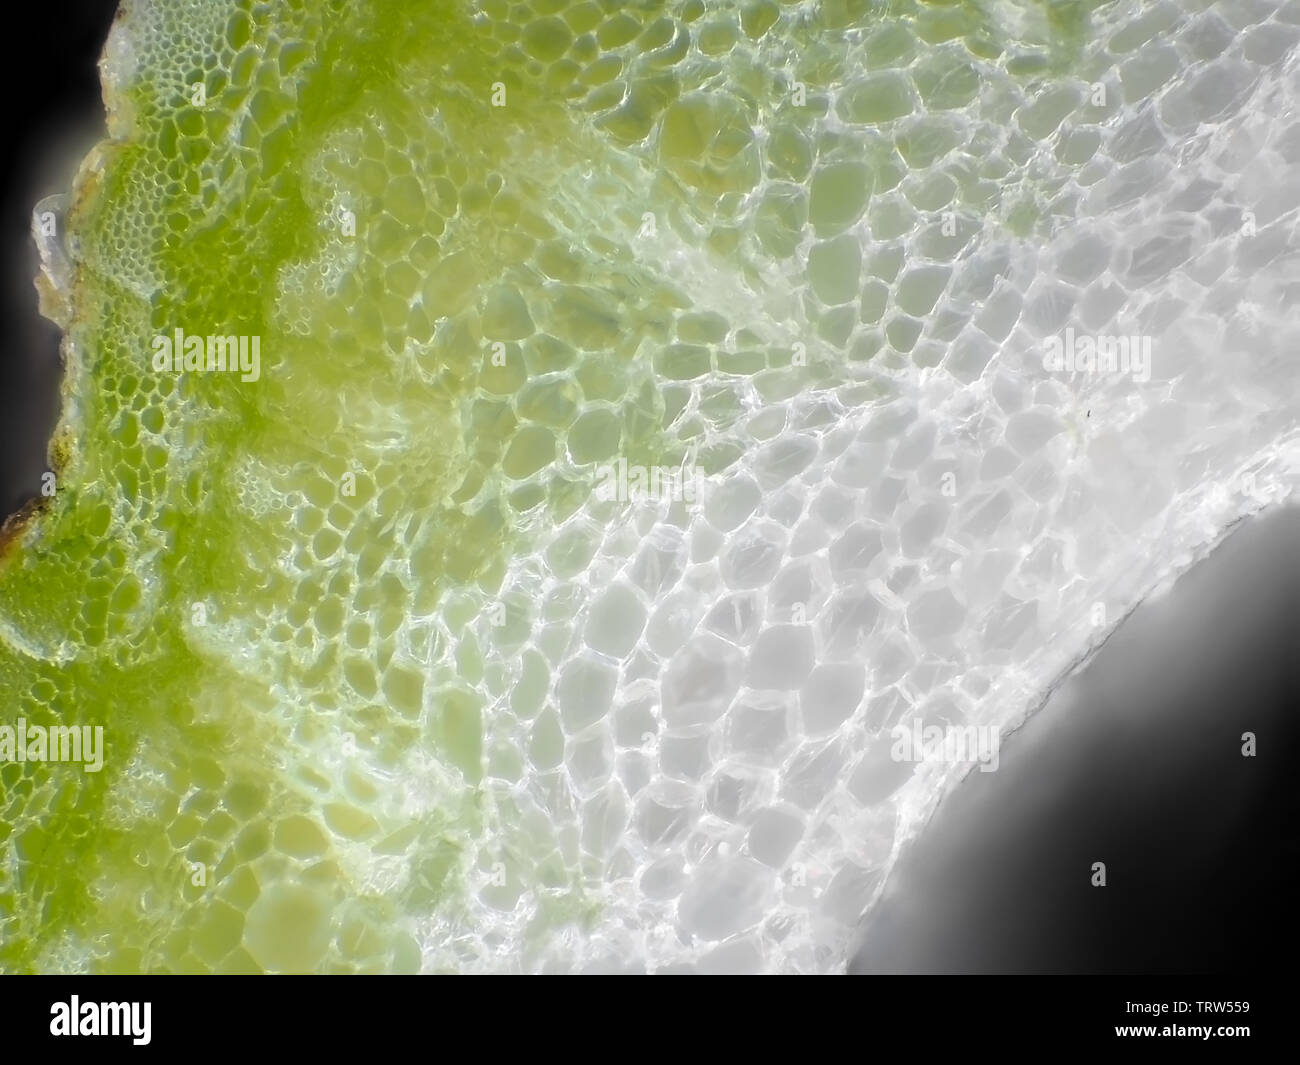 Karotte Stammzellen unter dem Mikroskop Stockfoto